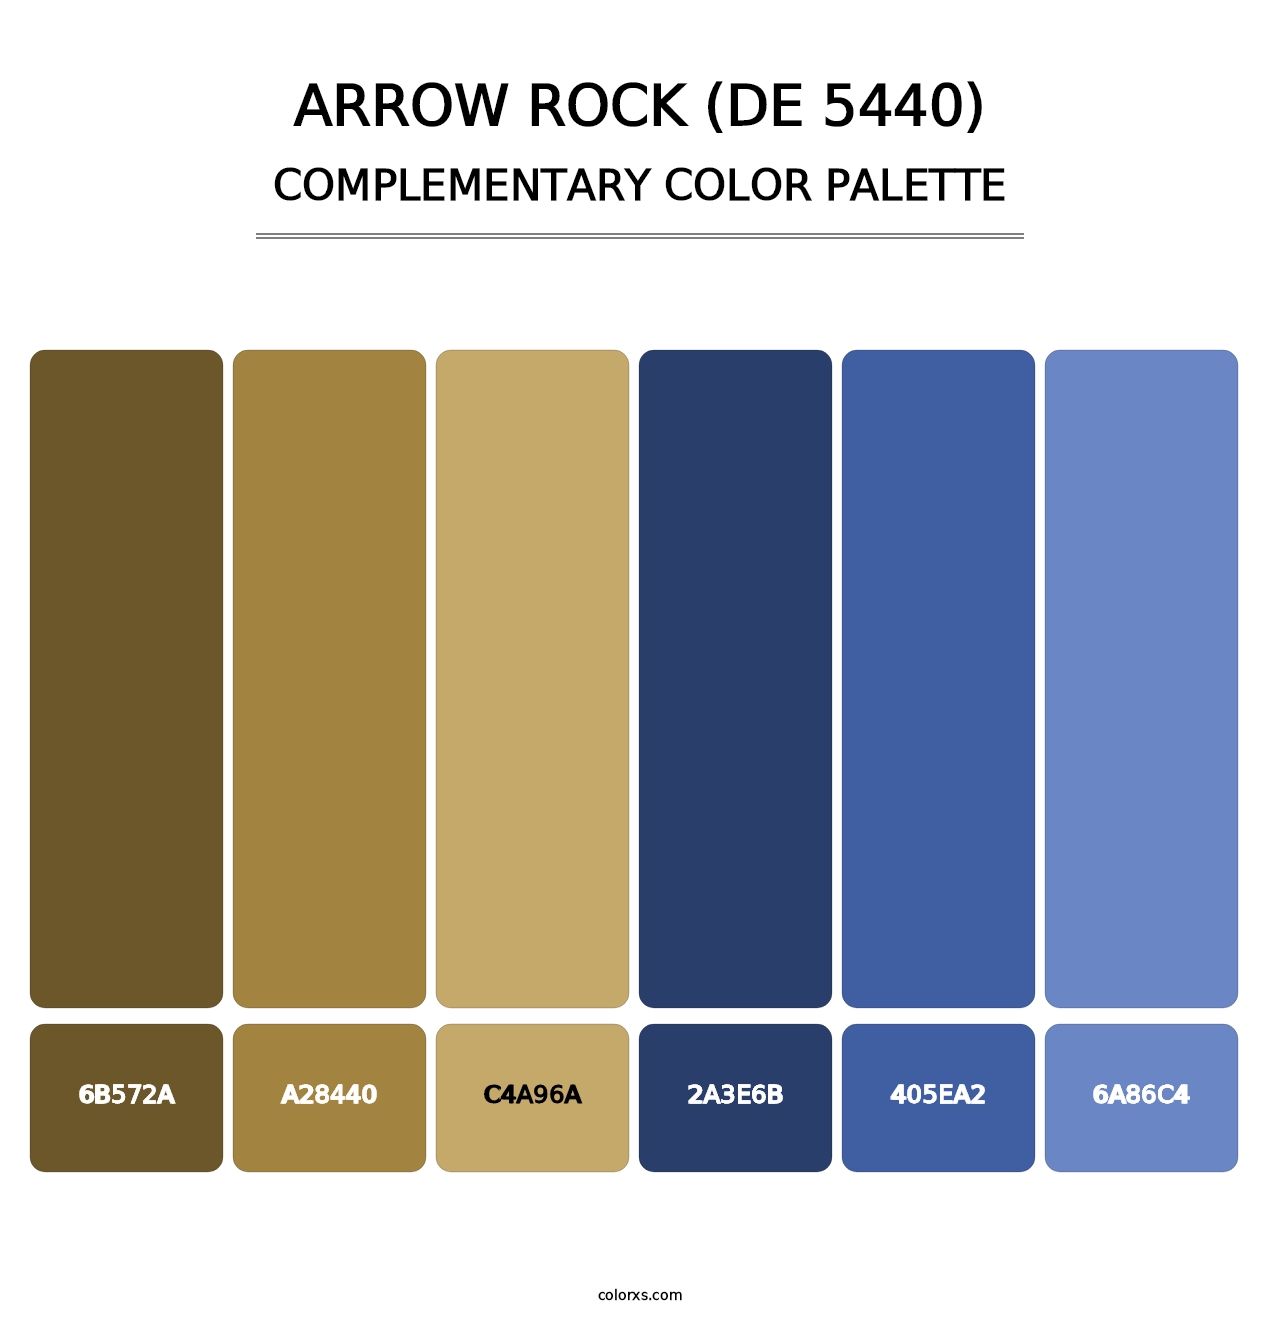 Arrow Rock (DE 5440) - Complementary Color Palette